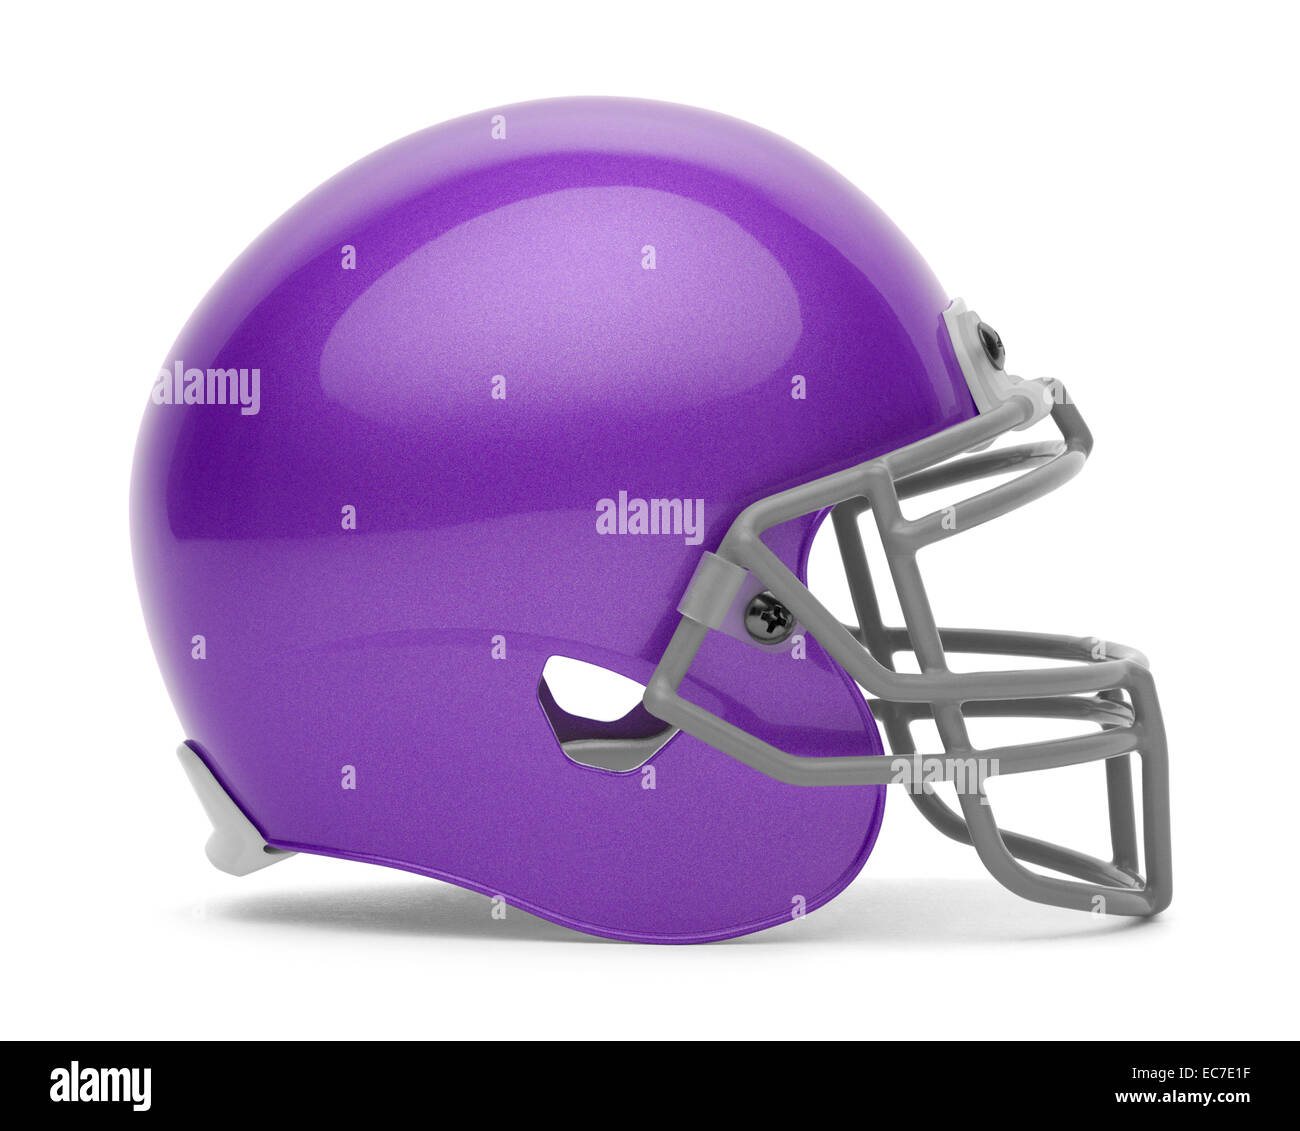 Seitenansicht der lila Football Helm mit textfreiraum Isolated on White Background. Stockfoto